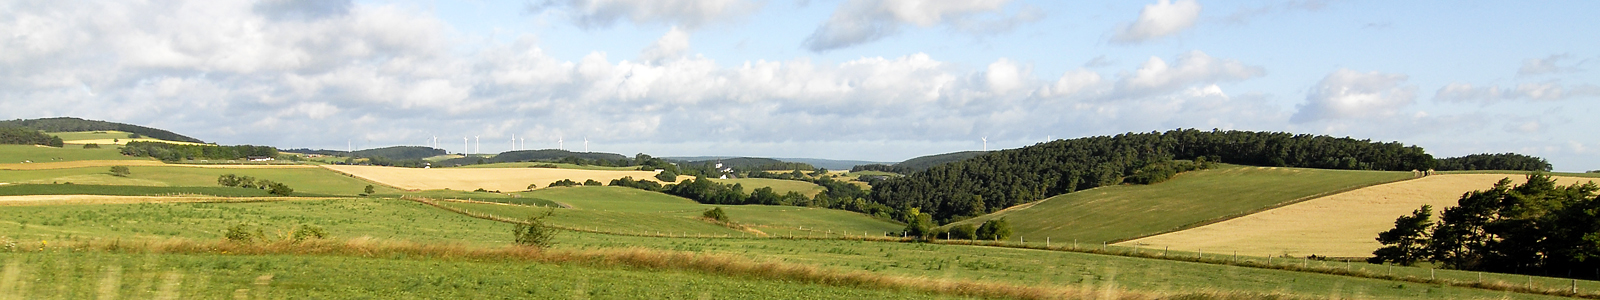 Blick in Landschaft mit Feldern und Hügeln ©Feuerbach